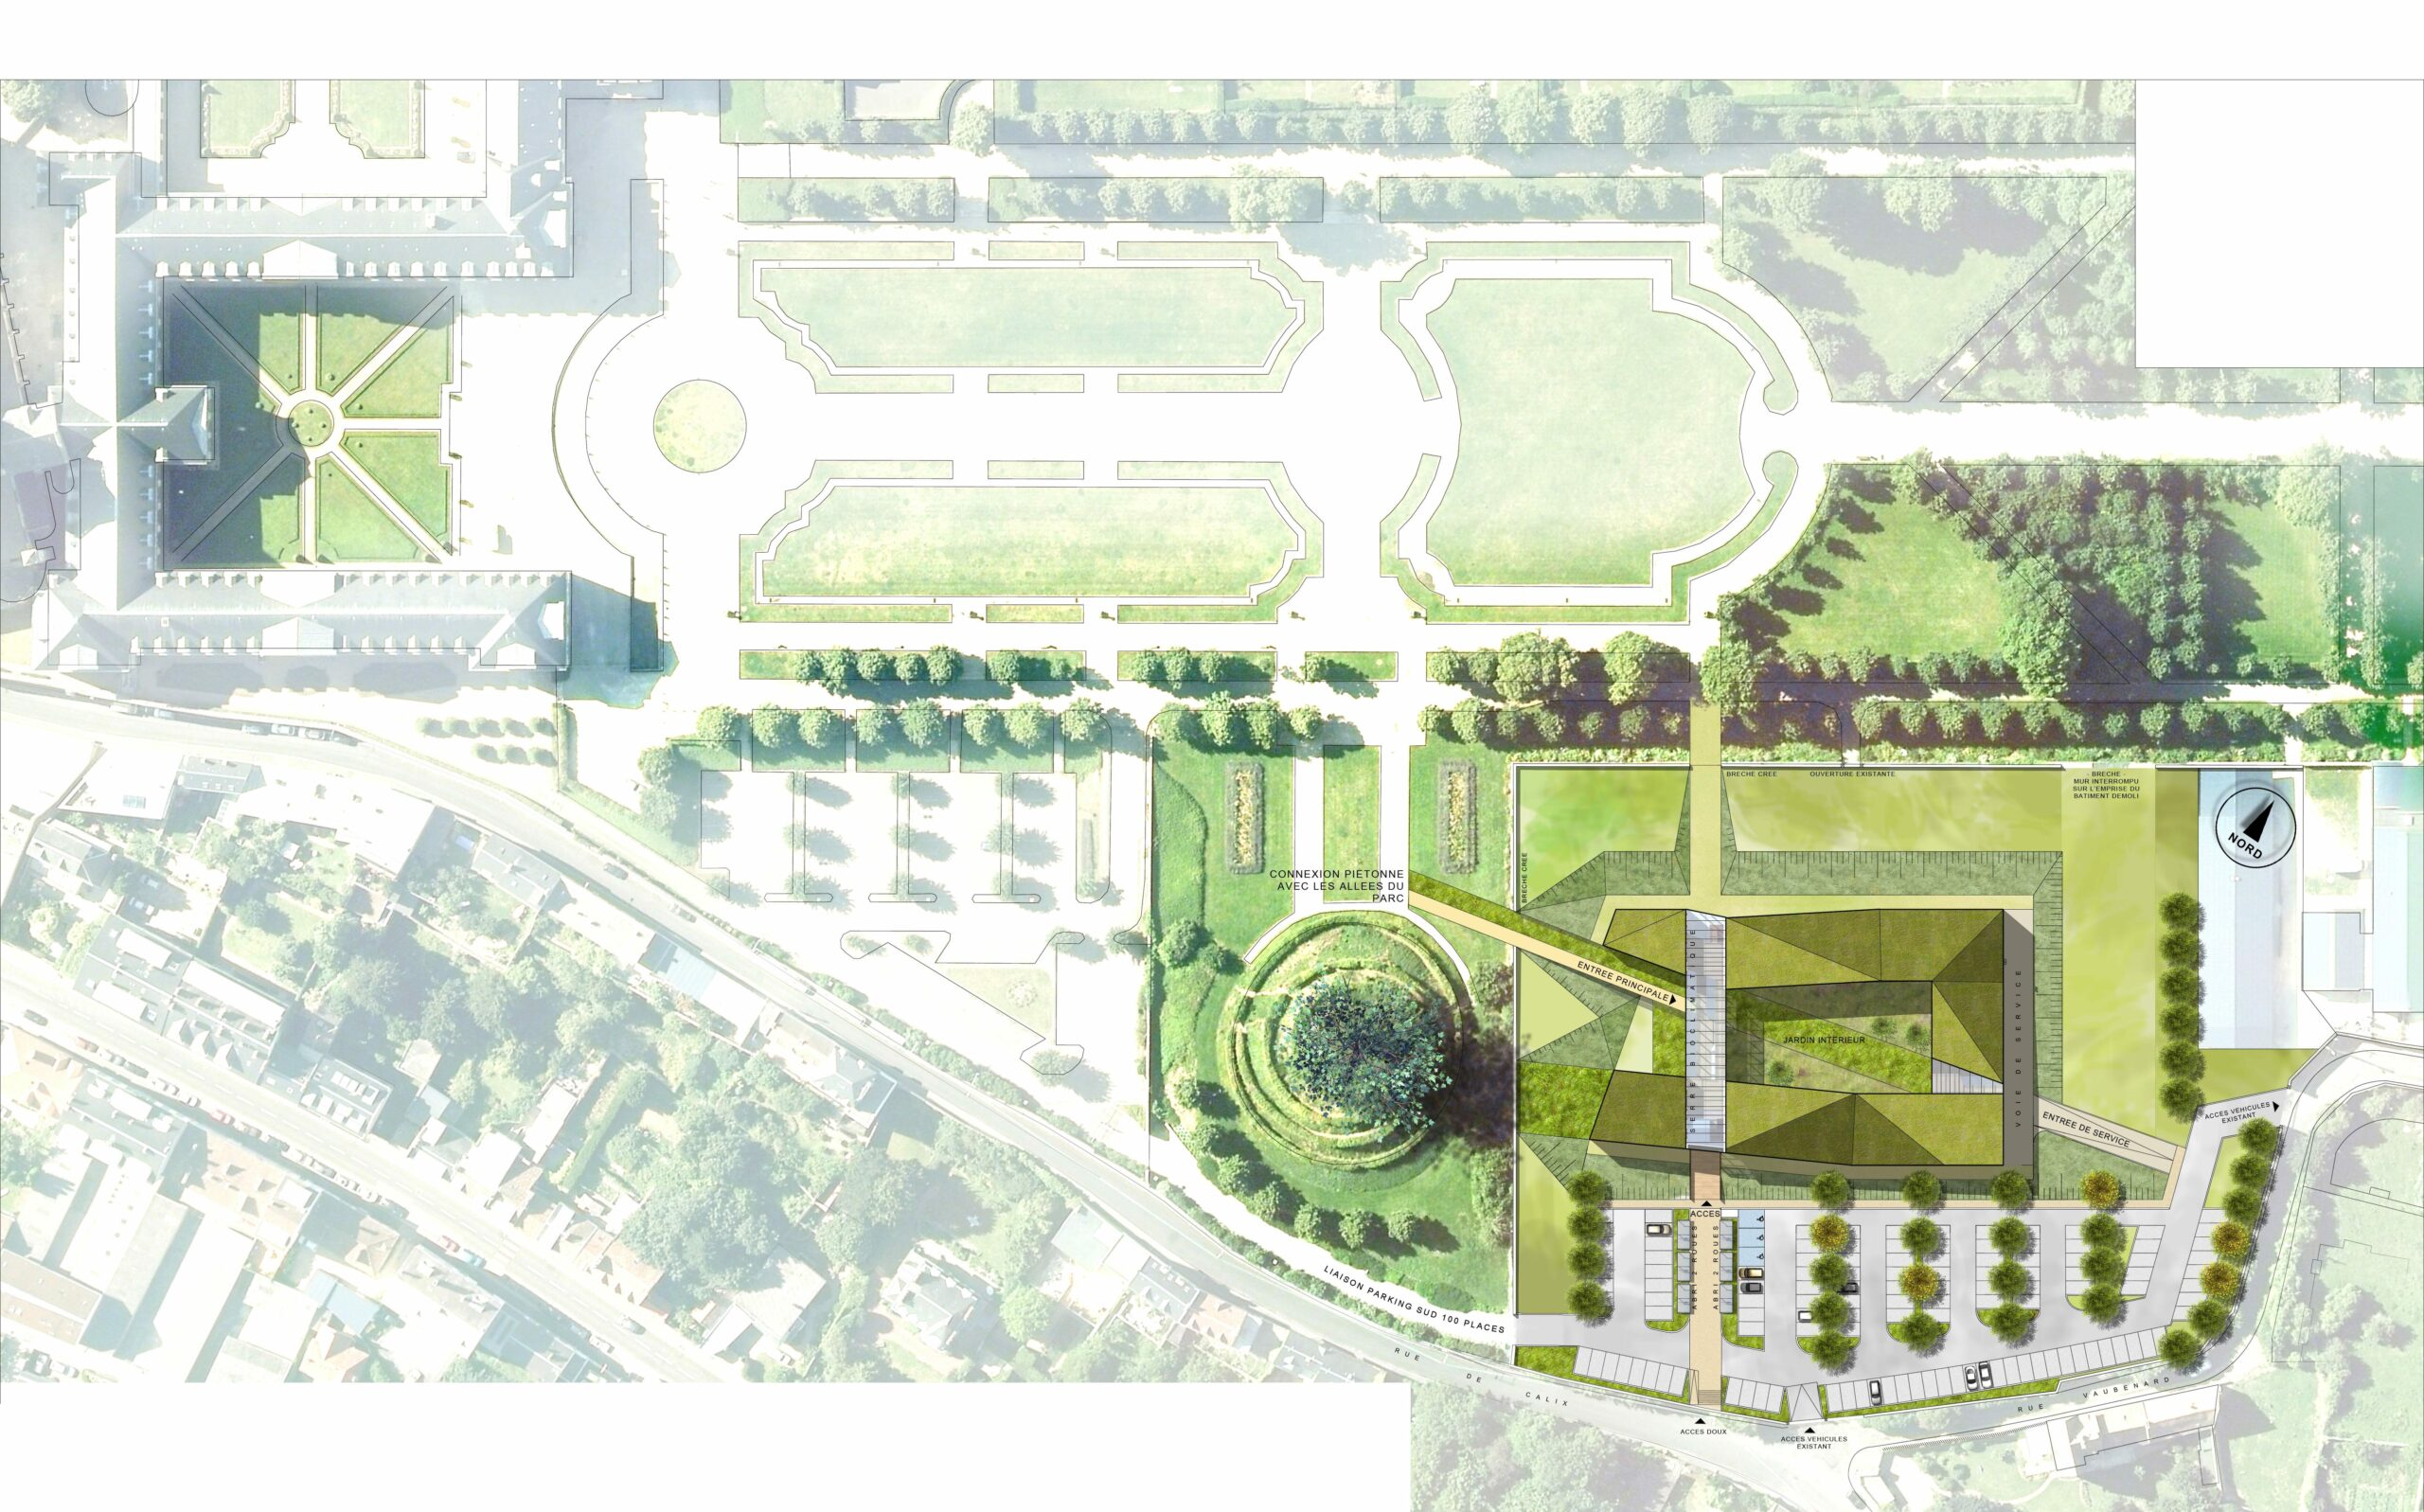 Hôtel de région de Caen - Plan de masse du projet